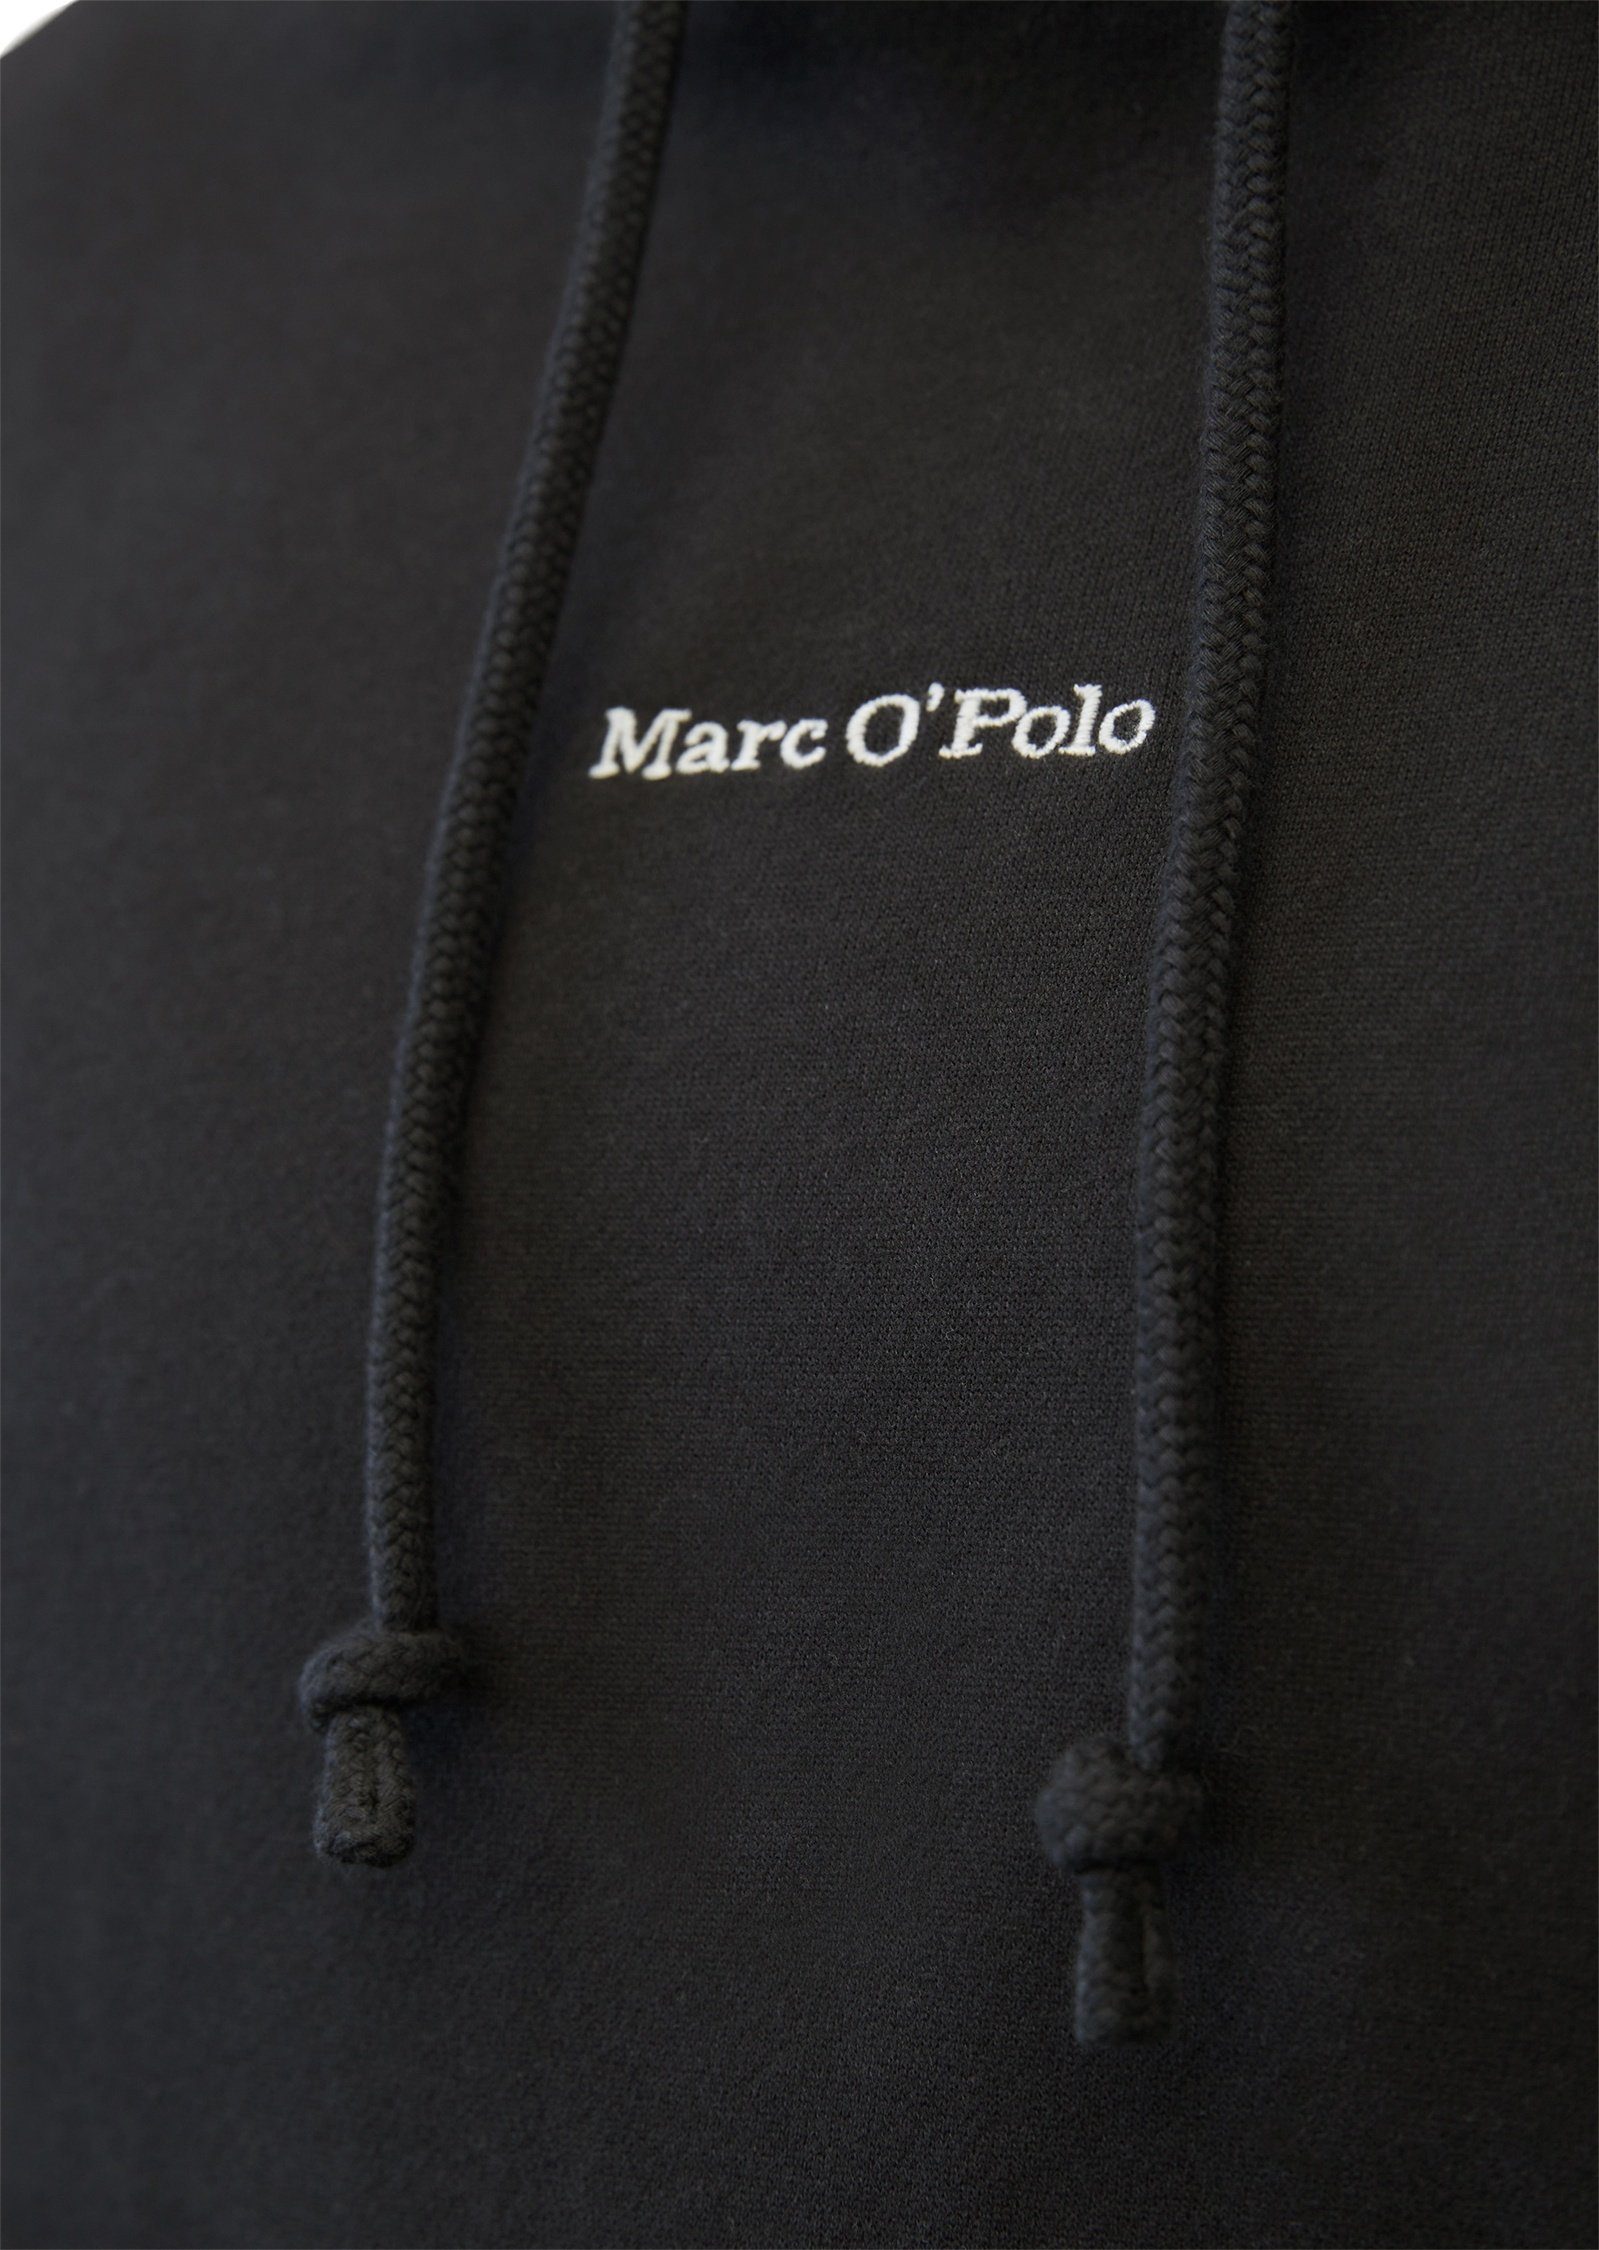 Marc reiner Bio-Baumwolle Sweatshirt schwarz O'Polo aus